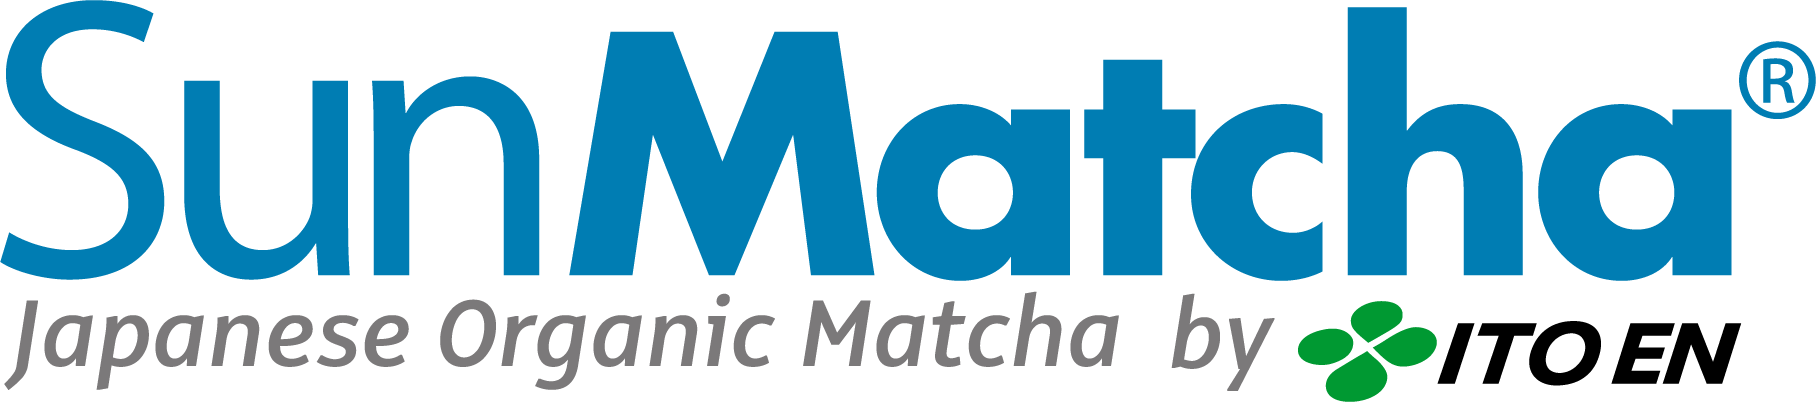 SunMatcha Logo